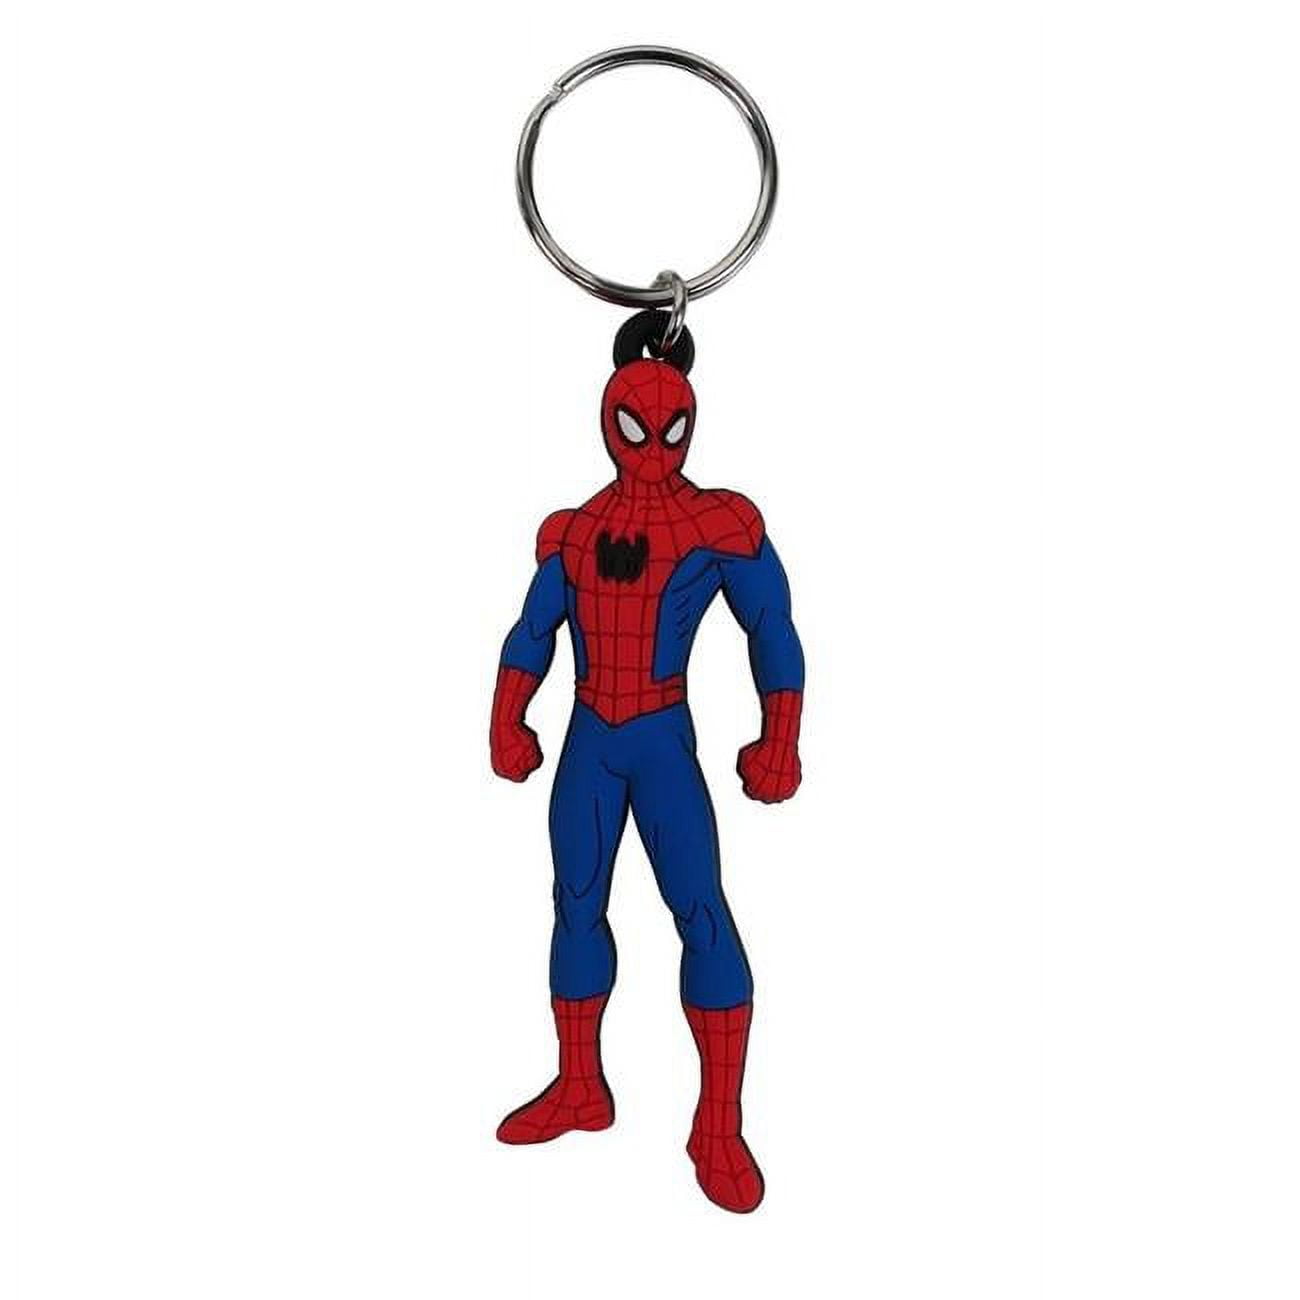 Spiderman (Crouch) rubber keychain - 5050293382012